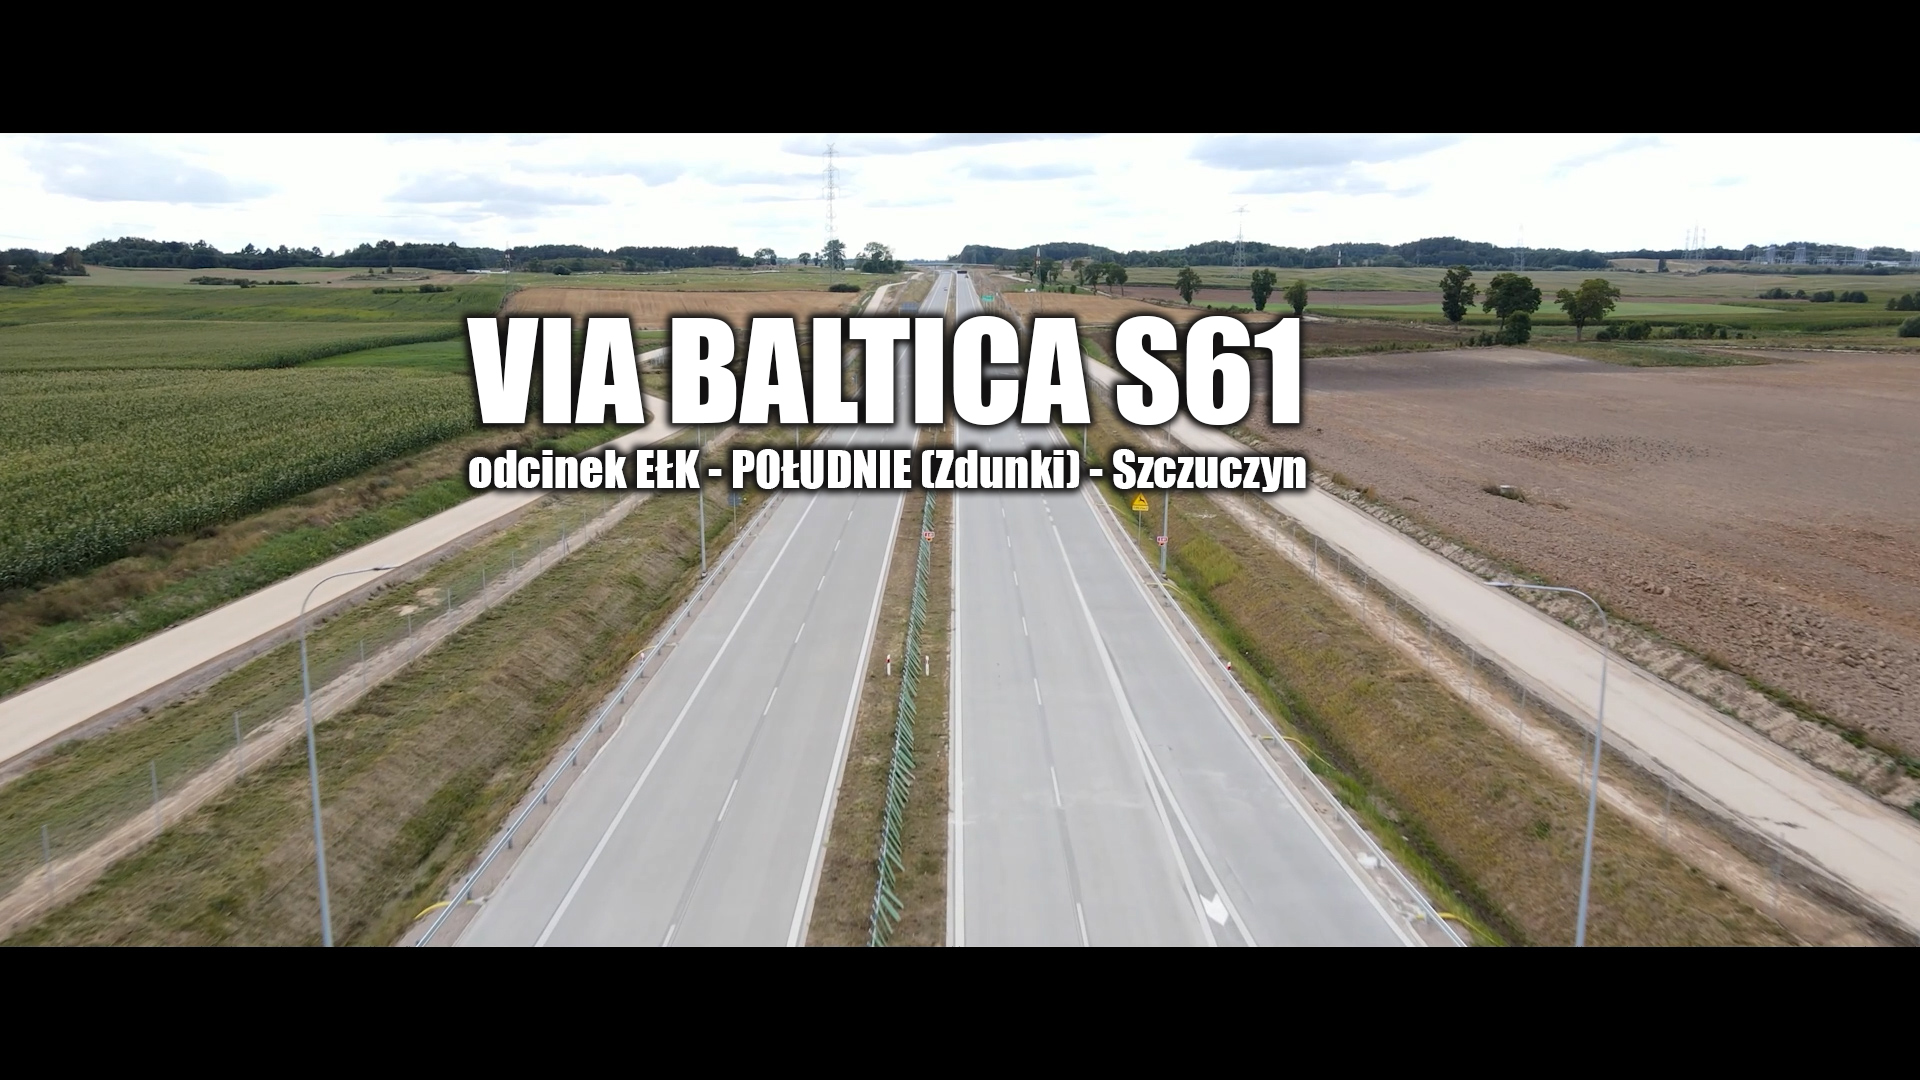 Официальное открытие следующего этапа via Baltica – смотрите видео